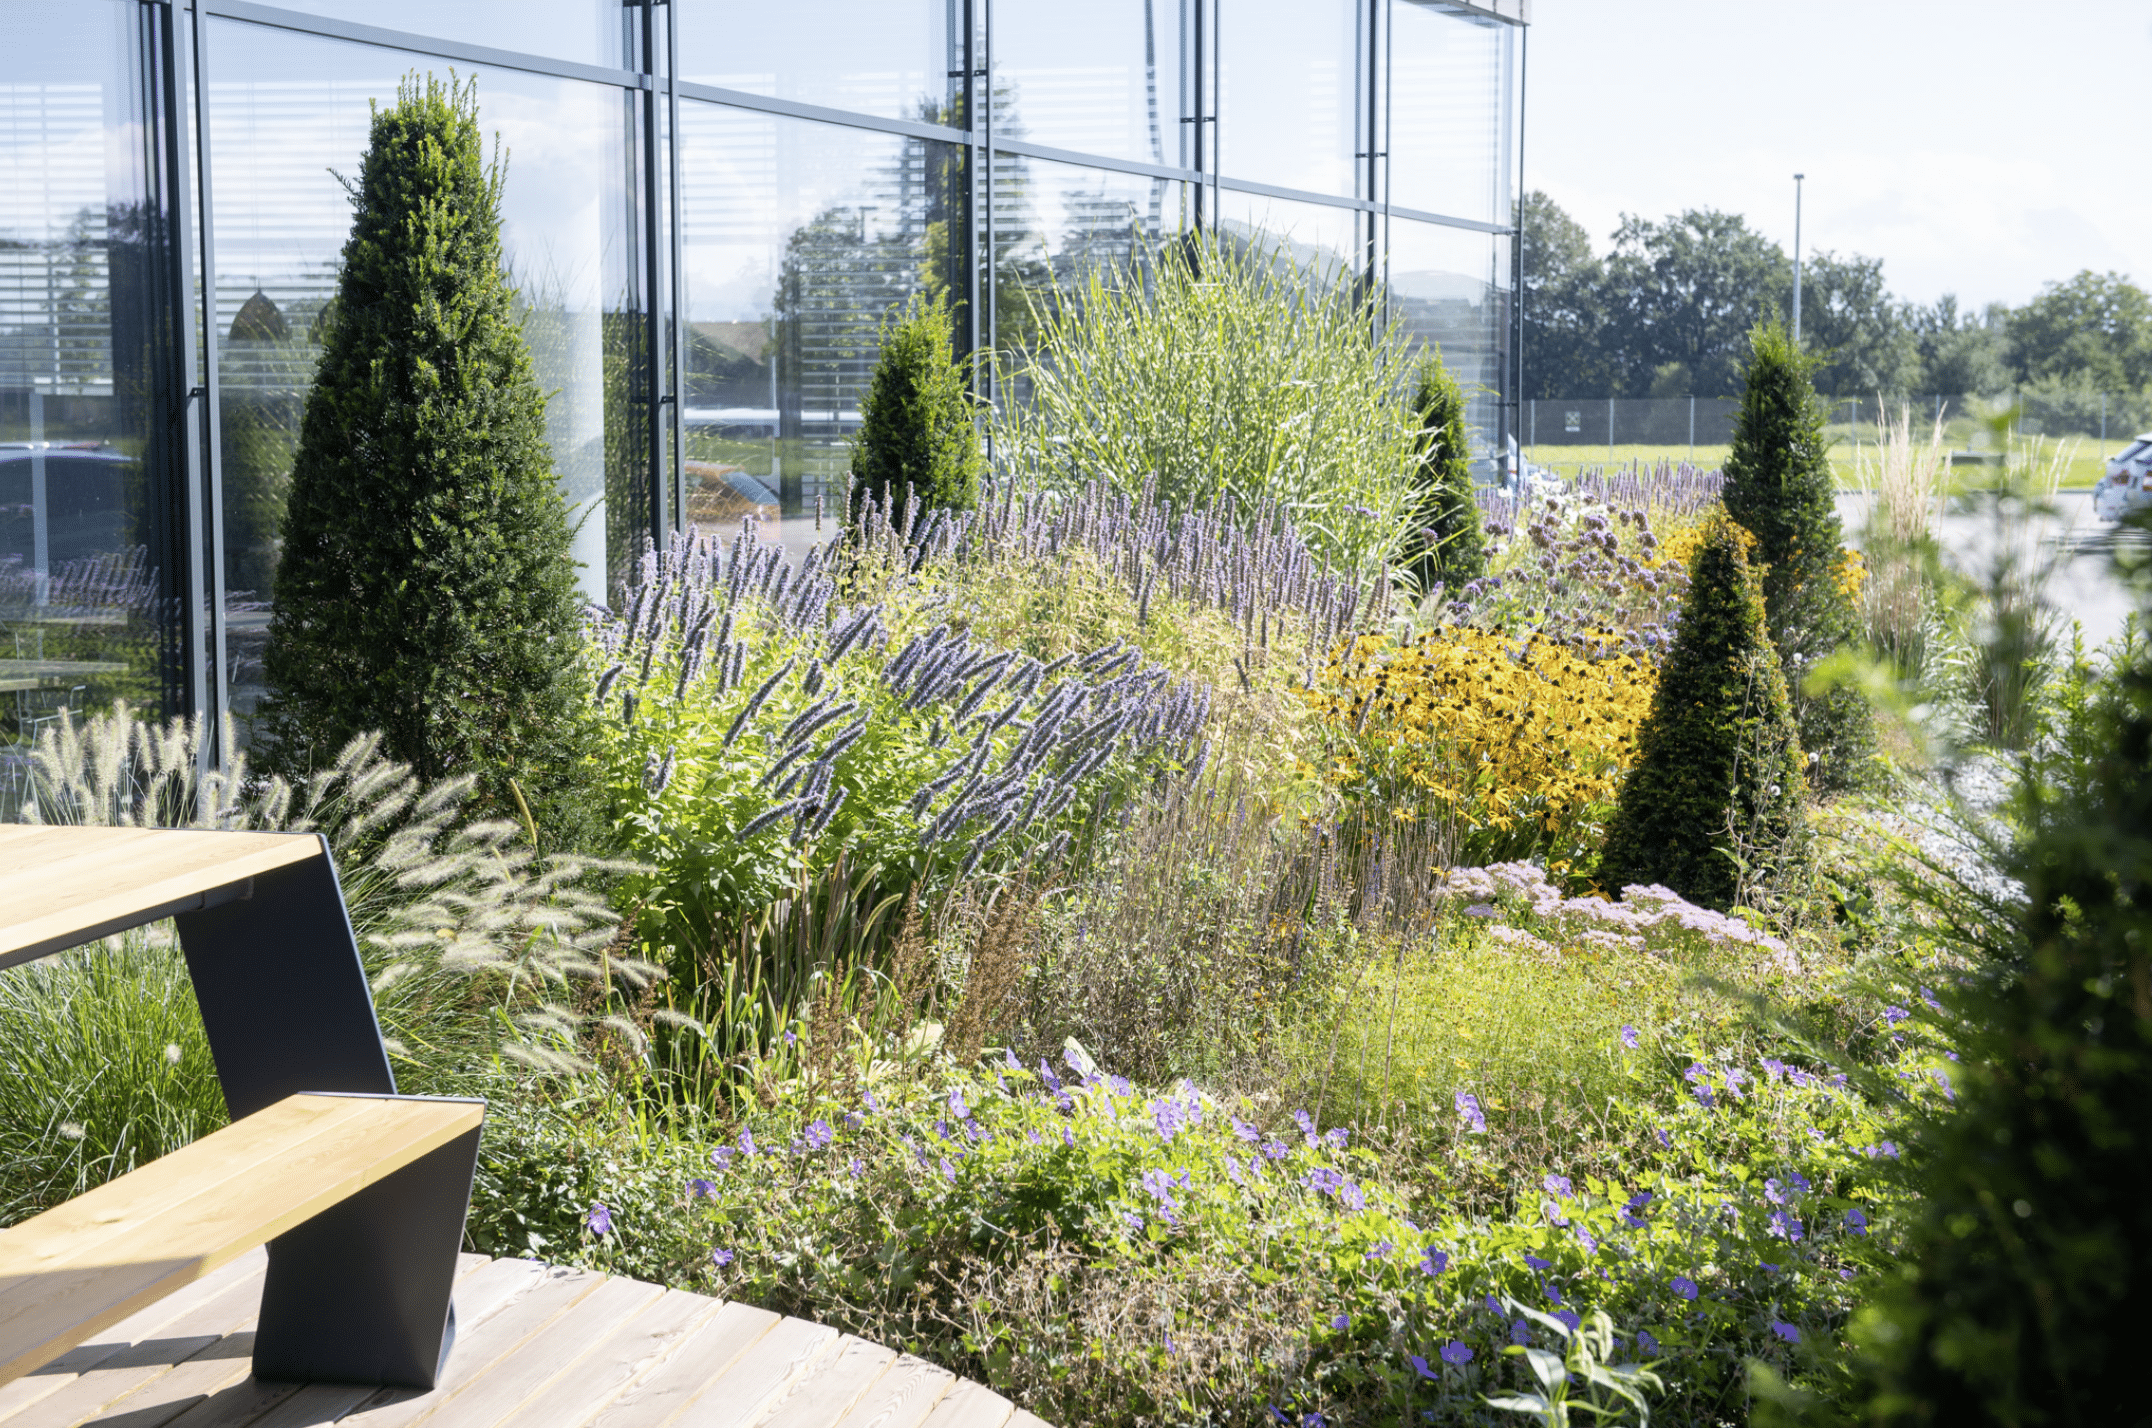 Gartenbau Schmid zeigt die Terrasse eines Firmengebäudes, welche mit verschiedenen Büschen und Sträuchern bepflanzt wurde.